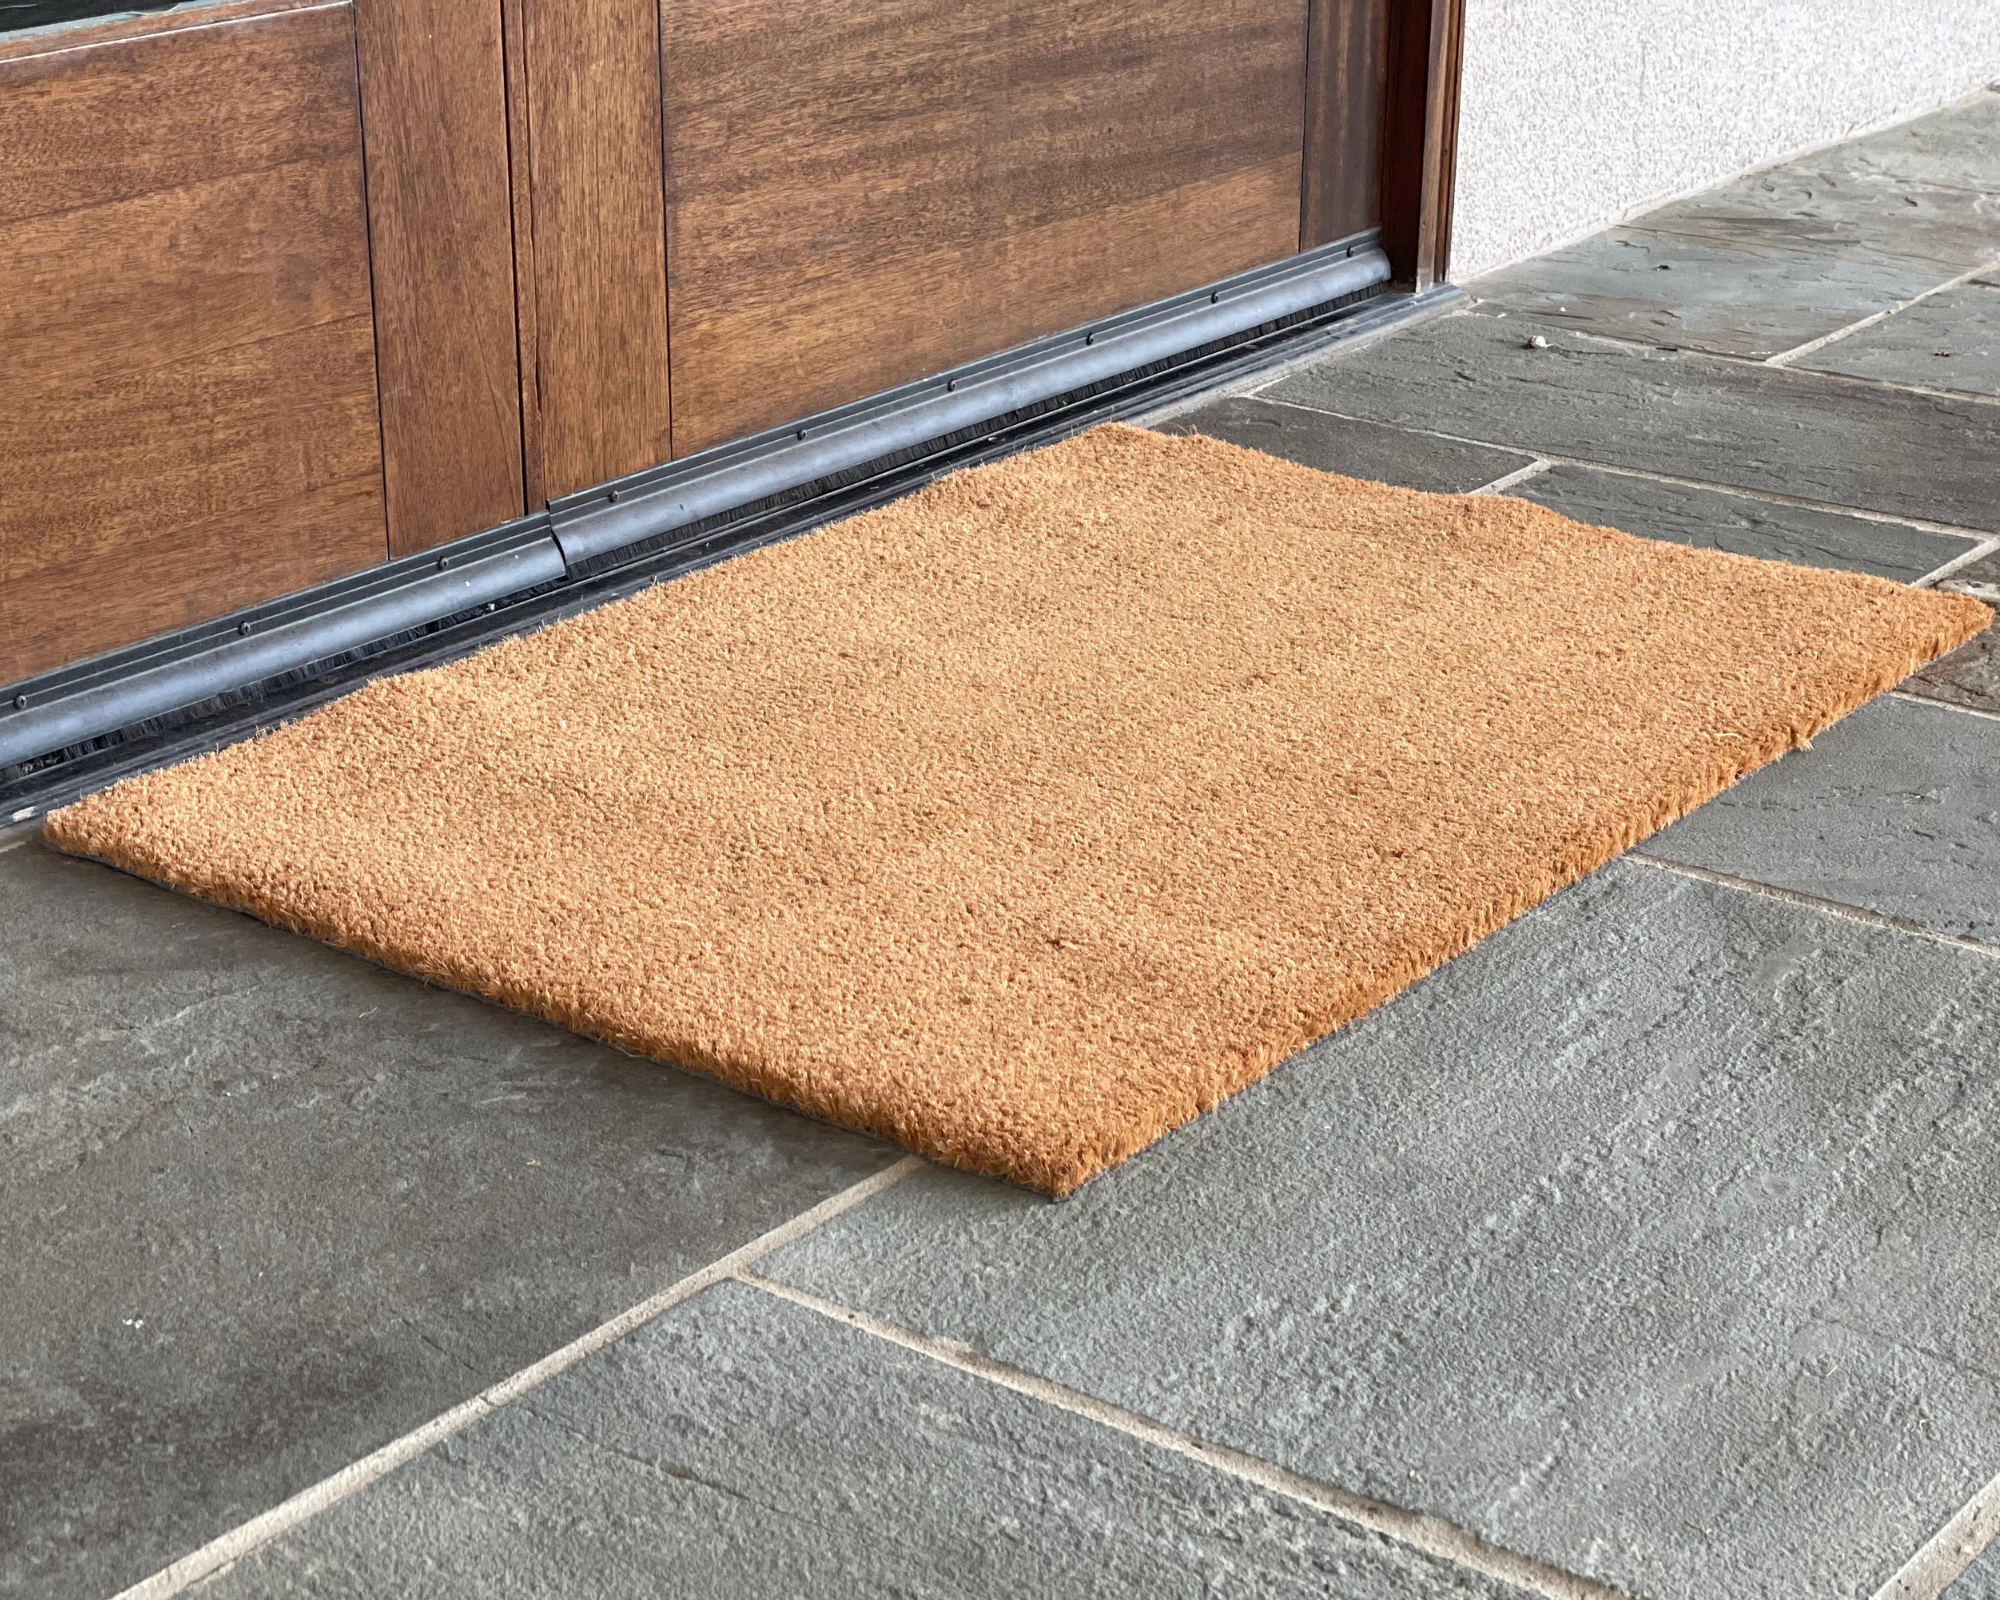 Blank Doormat, Unprinted Doormat, Plain Doormat, Wholesale Blank